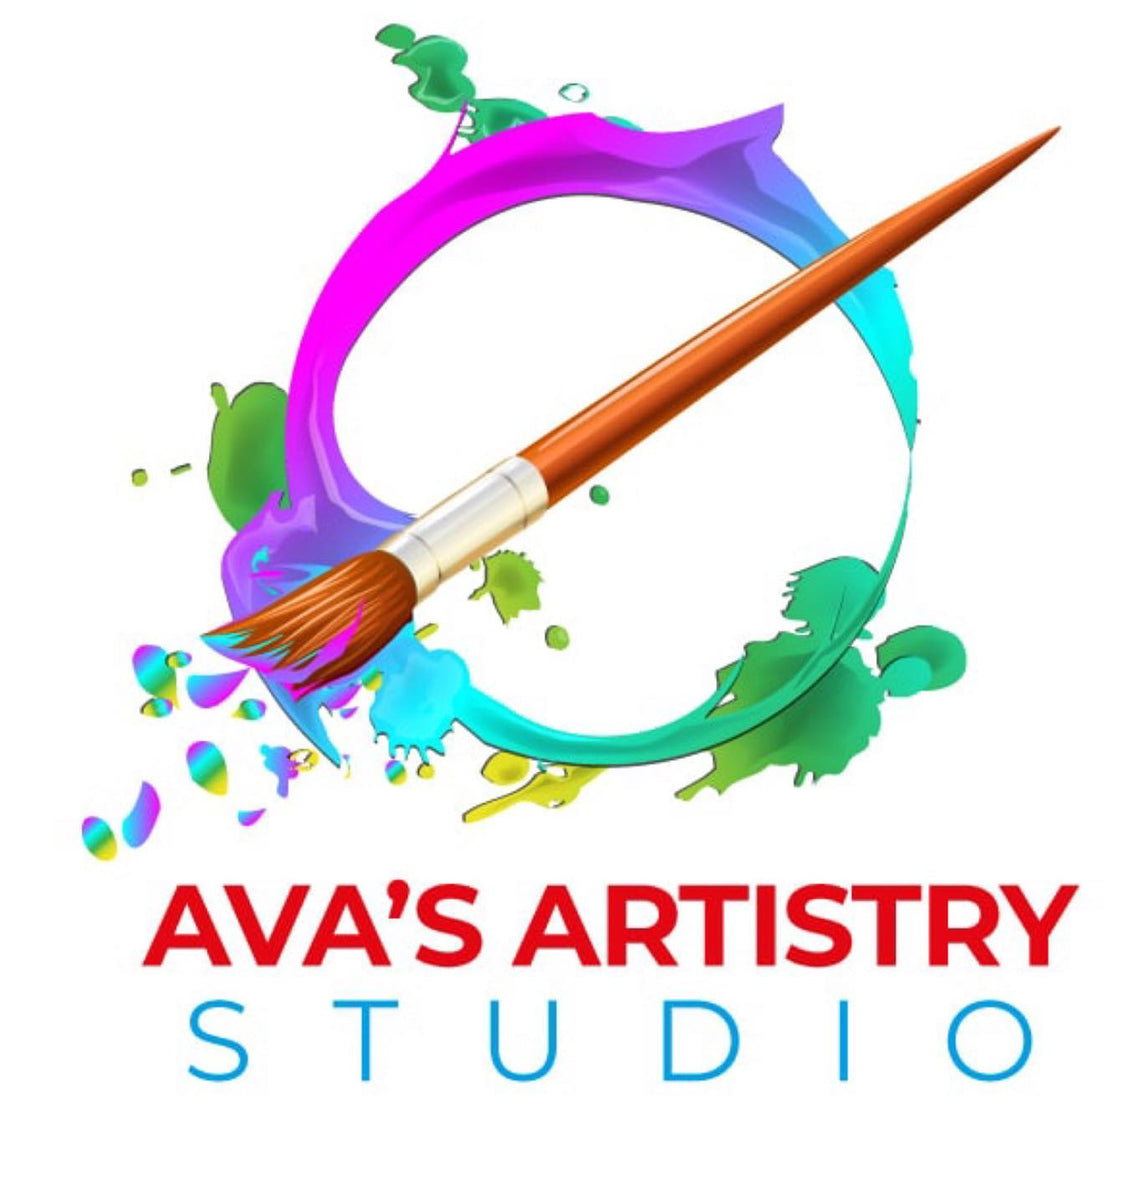 Ava's Artistry Studio – AVA's Artistry Studio